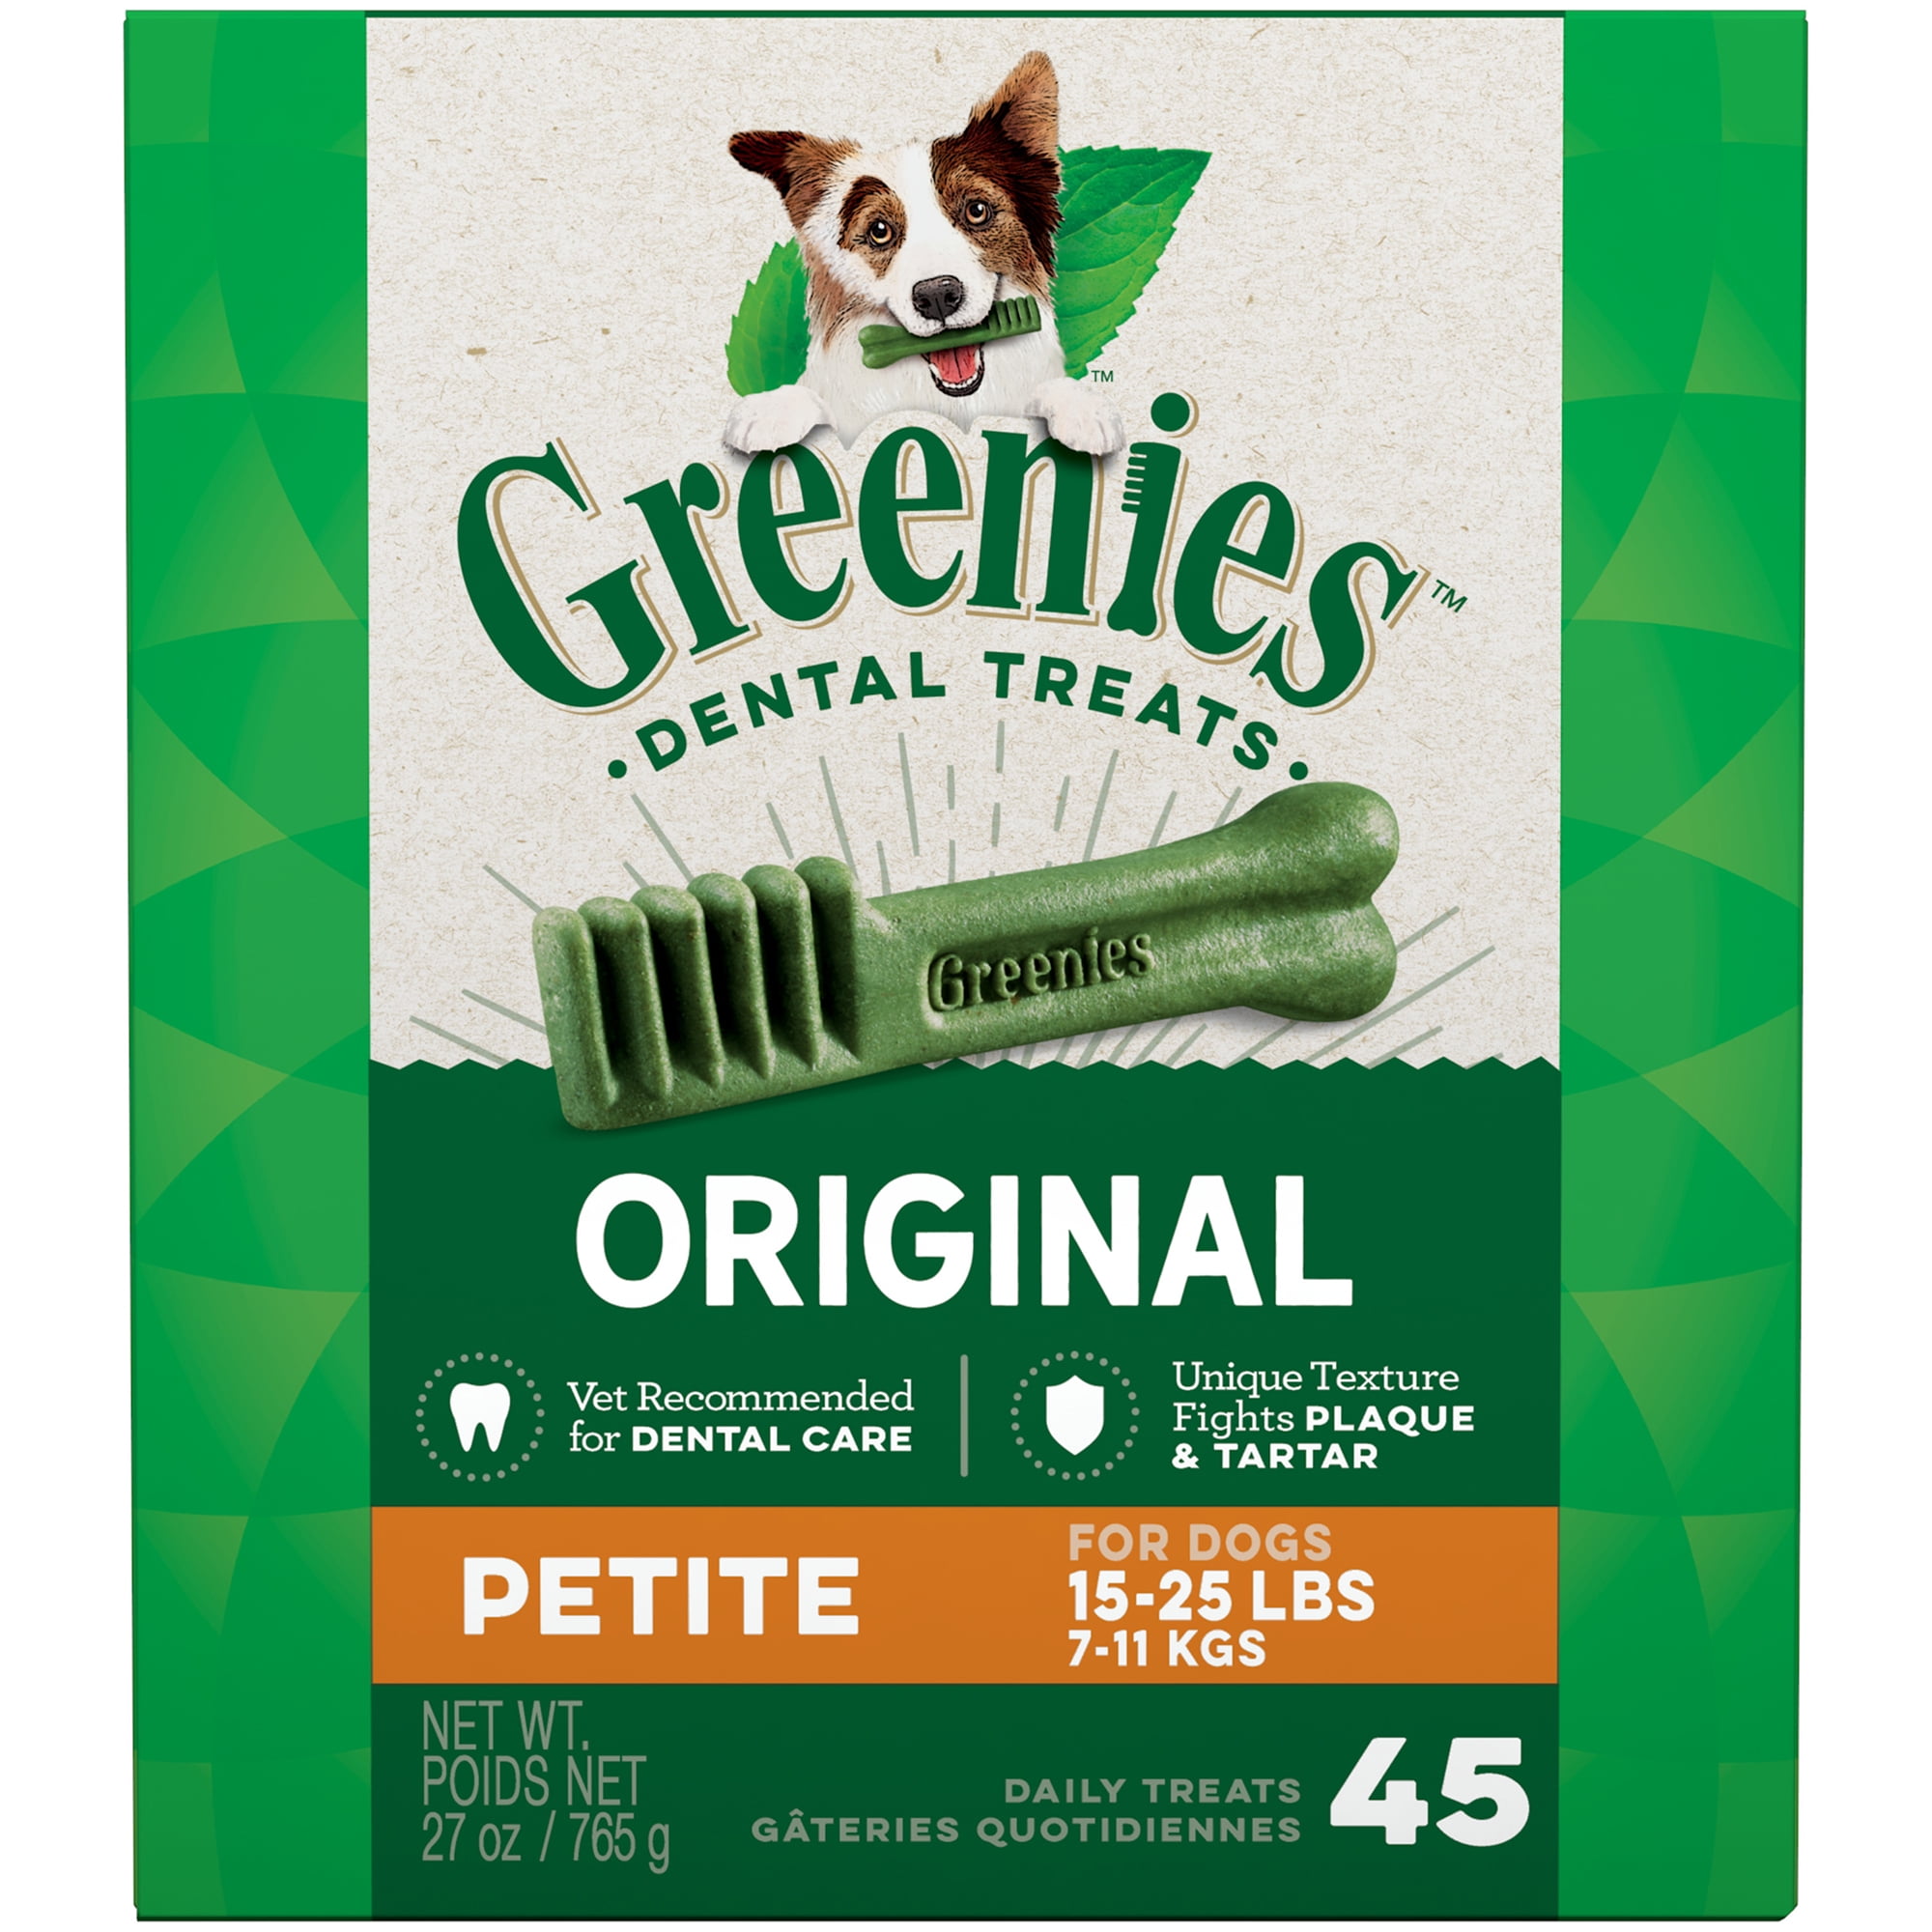 Greenies Original Petite Natural Dental 